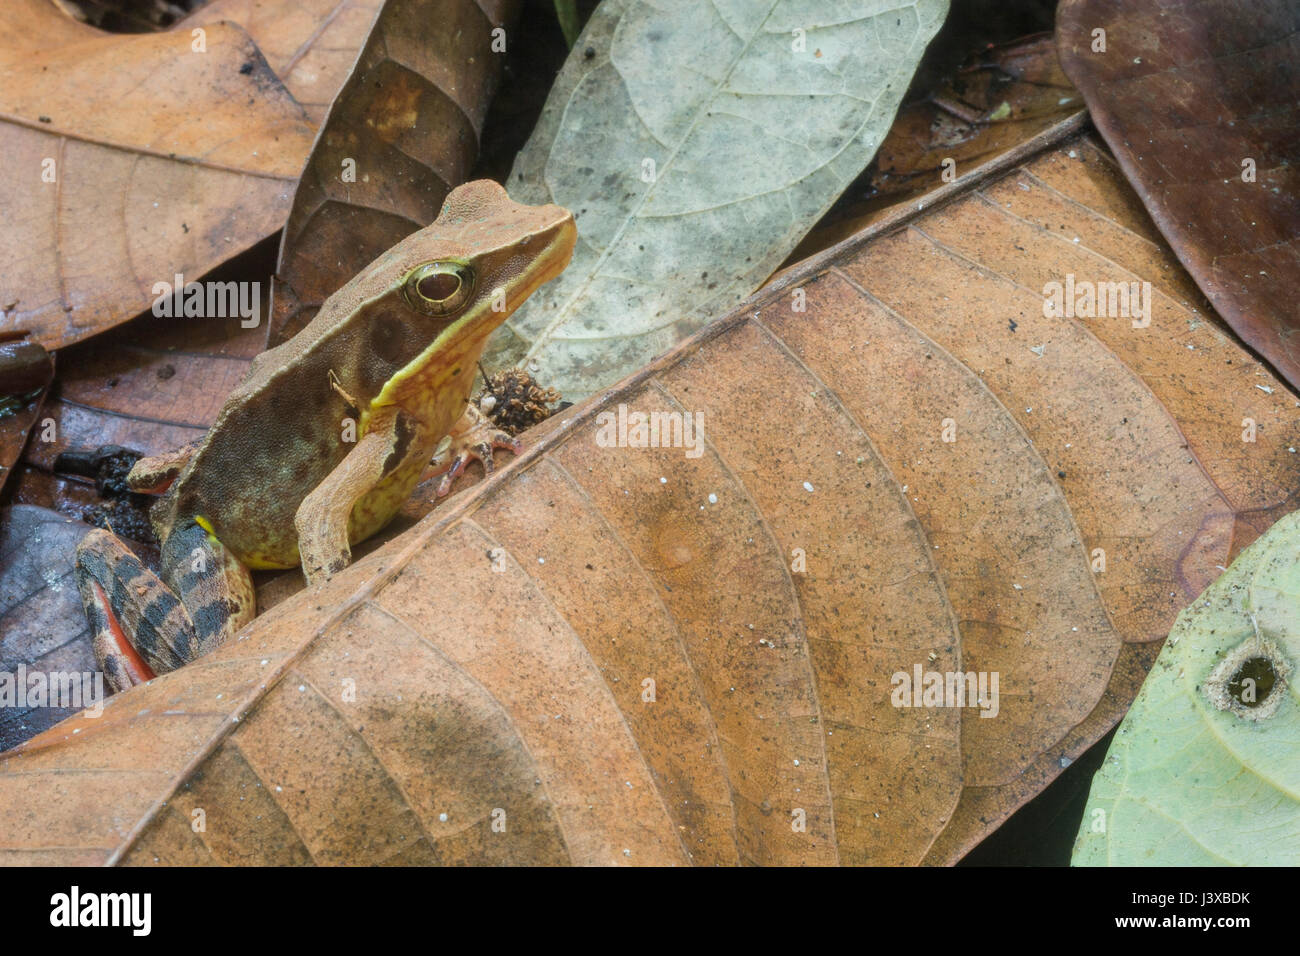 Muy brillante camuflado forest frog (Rana warszewitschii) entre la hojarasca en las tierras bajas de las selvas tropicales de Costa Rica. Esta es una excelencia Foto de stock